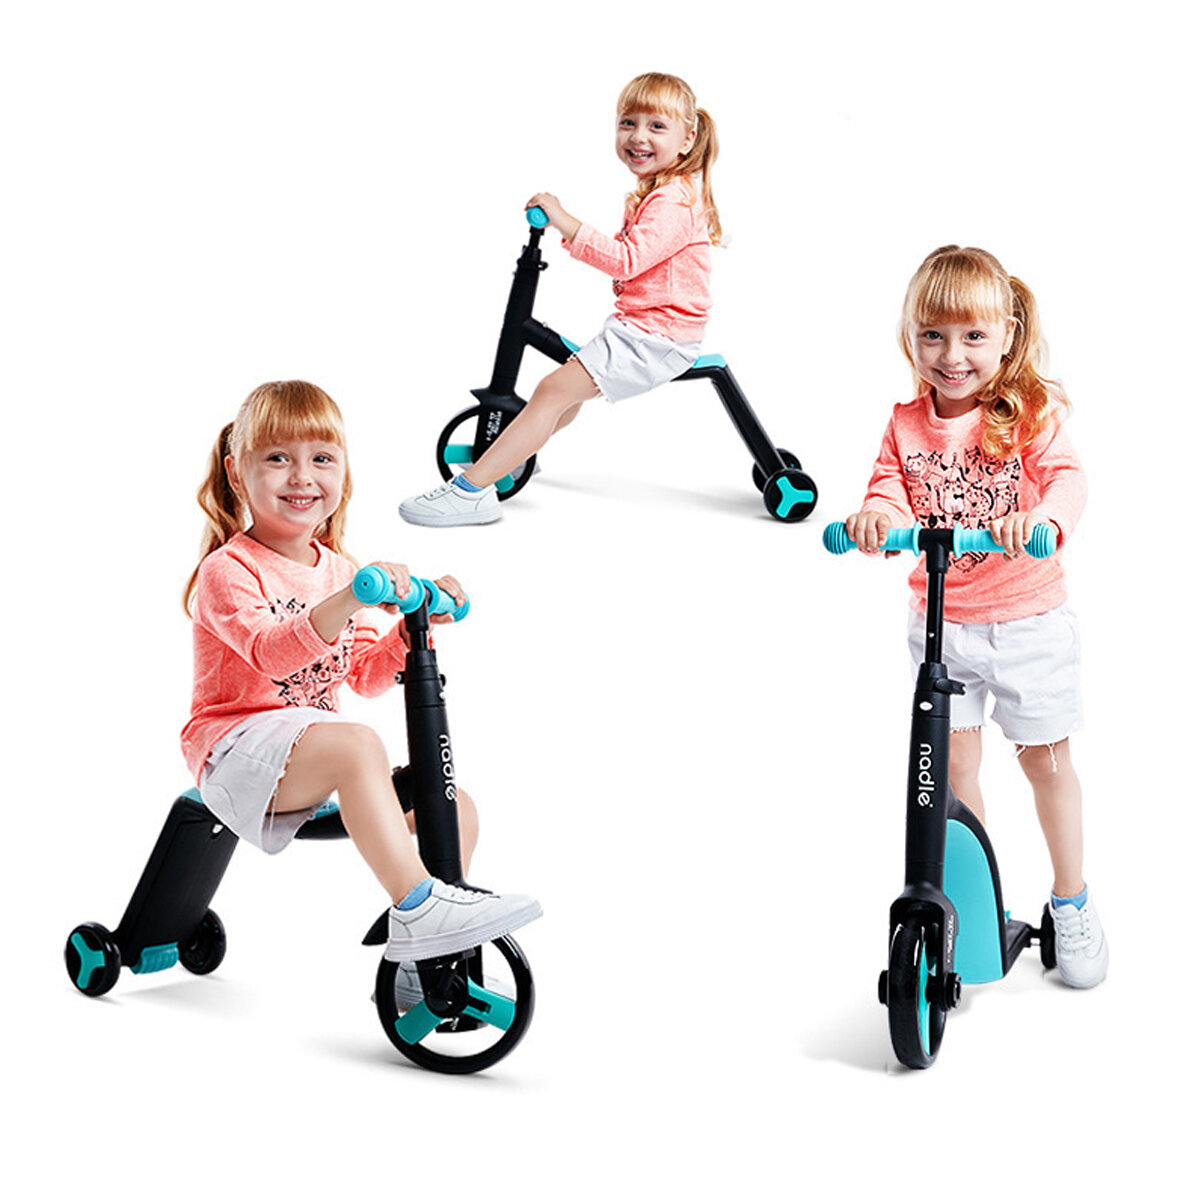 NADLE 3 في 1 دراجة توازن للأطفال بارتفاع قابل للتعديل للأعمار من 1-5 سكوتر أطفال دراجة ثلاثية العجلات للأطفال الصغار الر